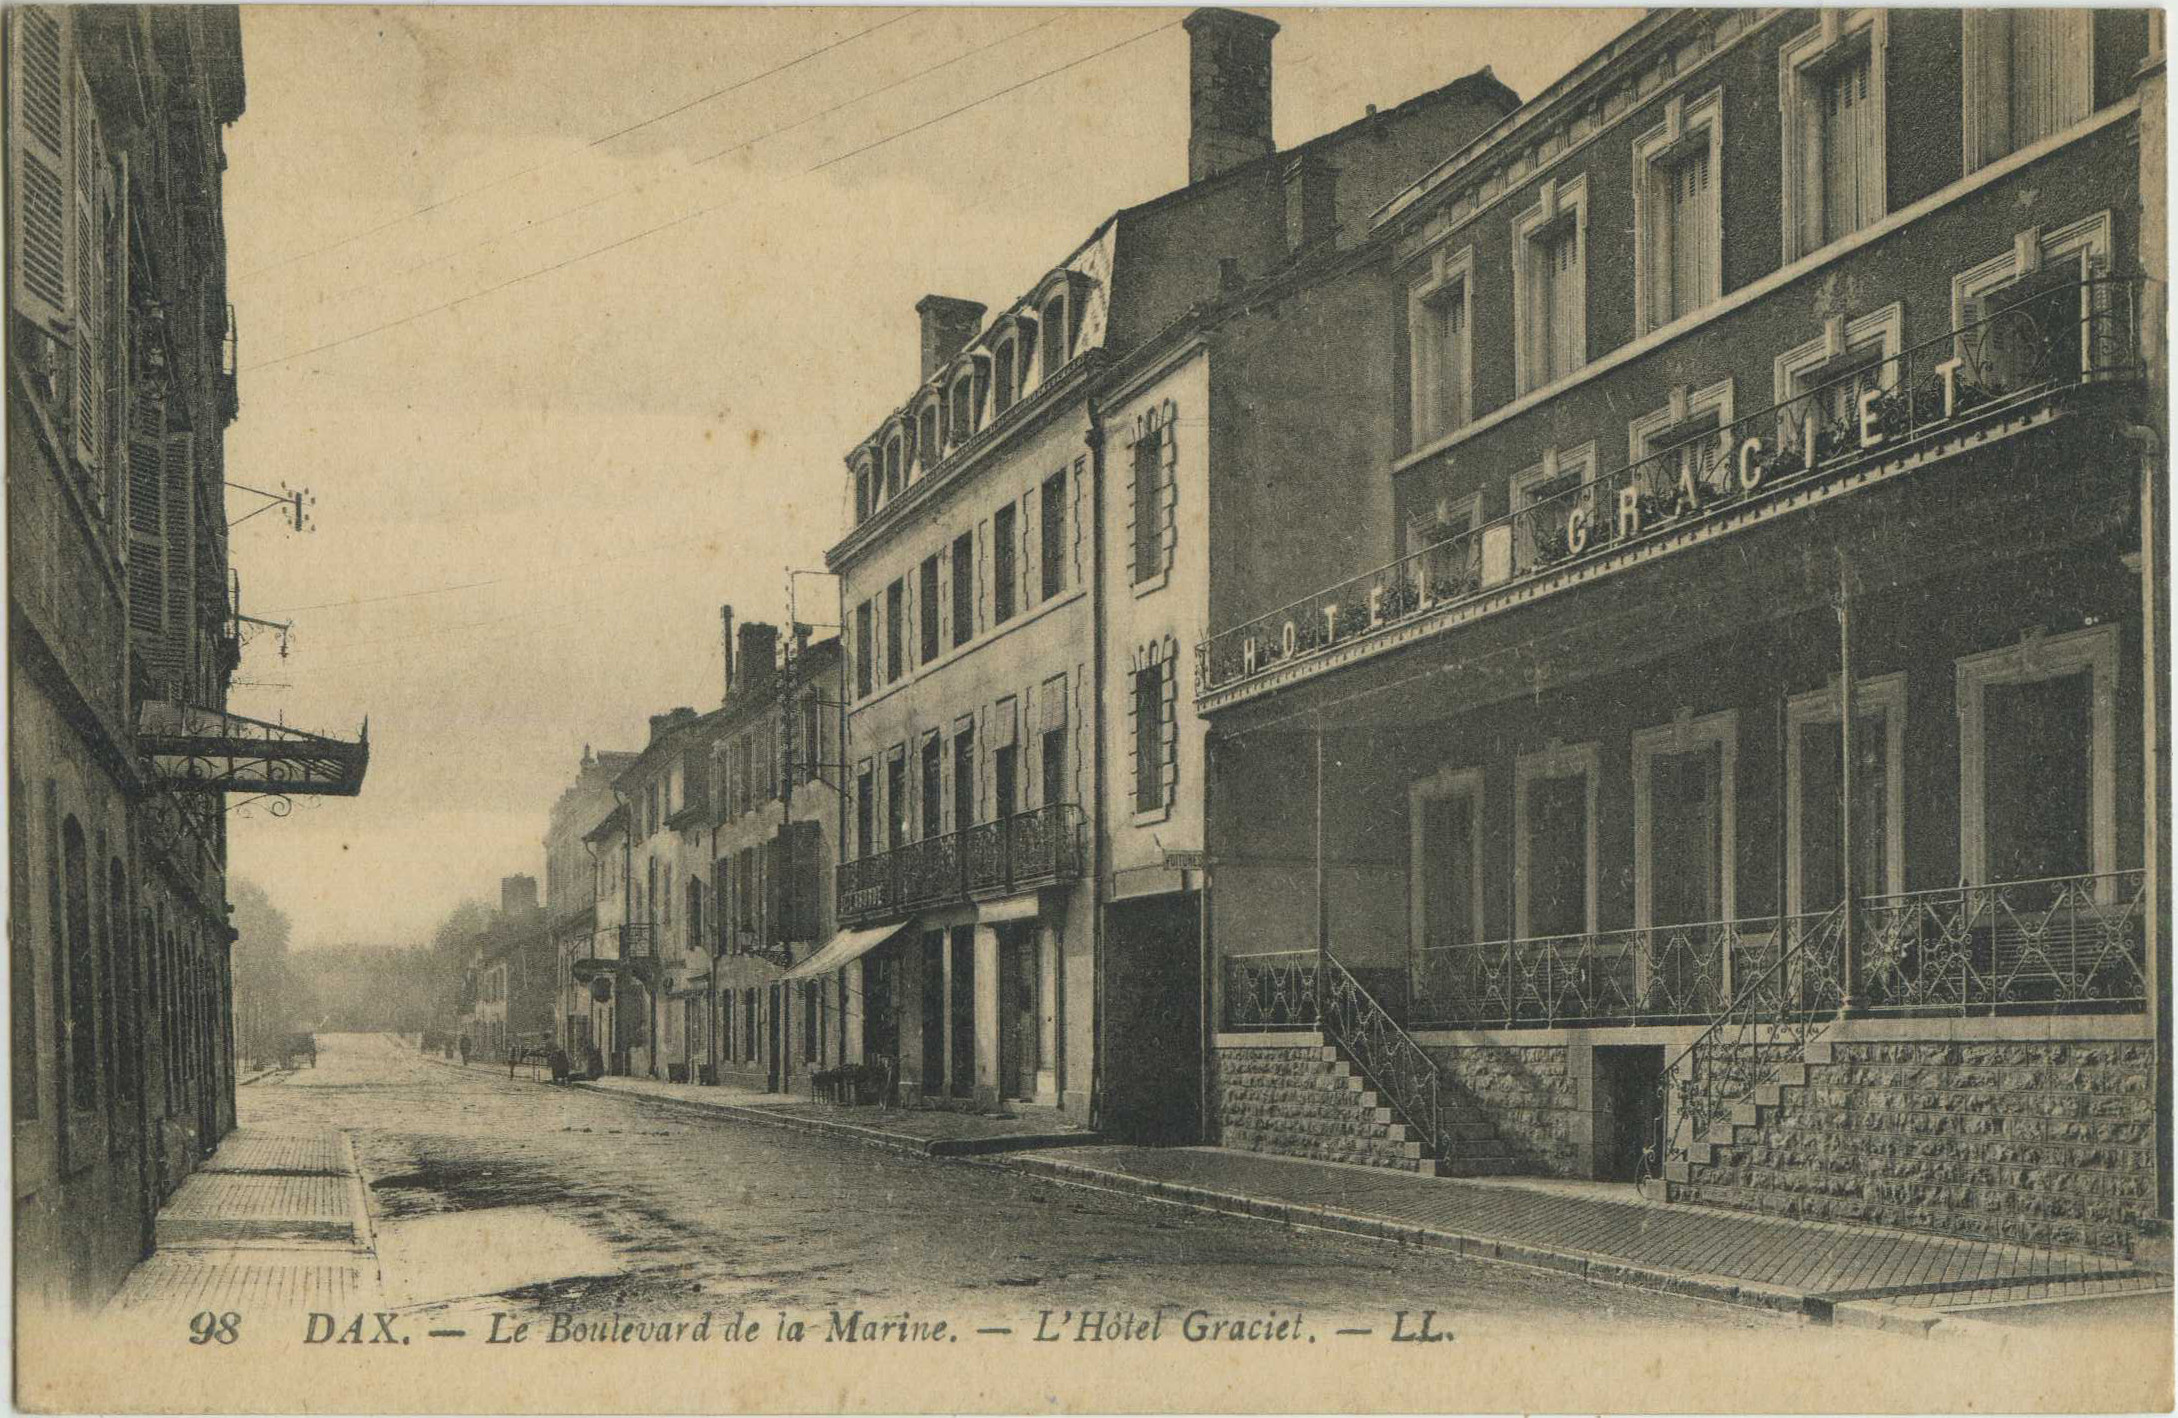 Dax - Le Boulevard de la Marine. - L'Hôtel Graciet.